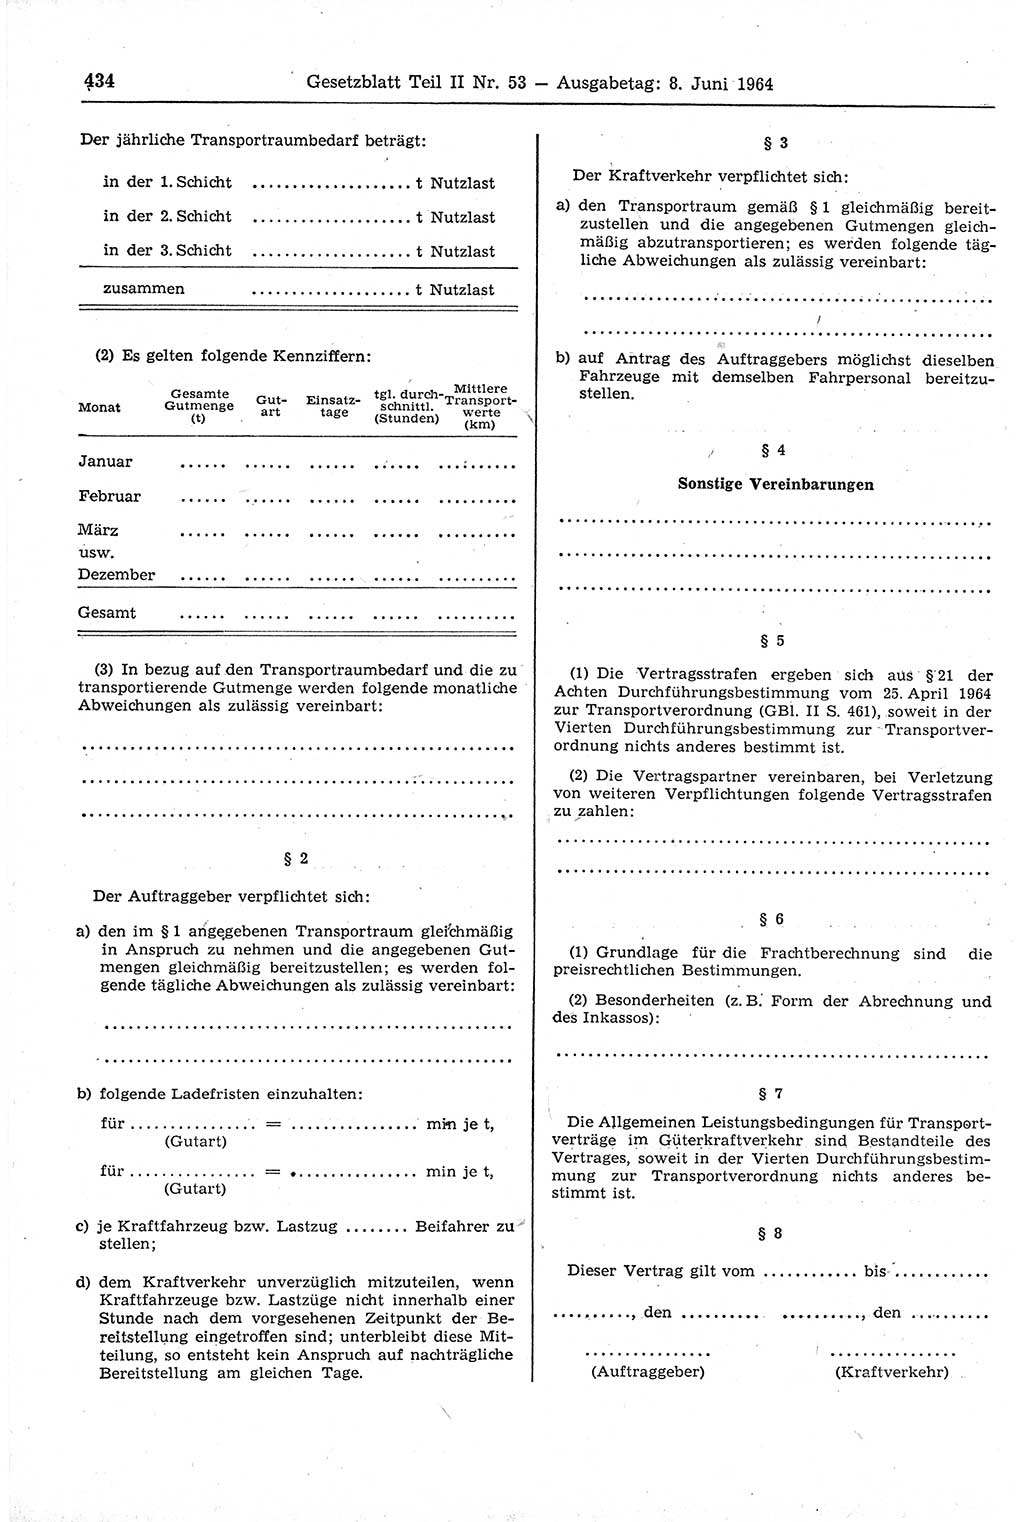 Gesetzblatt (GBl.) der Deutschen Demokratischen Republik (DDR) Teil ⅠⅠ 1964, Seite 434 (GBl. DDR ⅠⅠ 1964, S. 434)